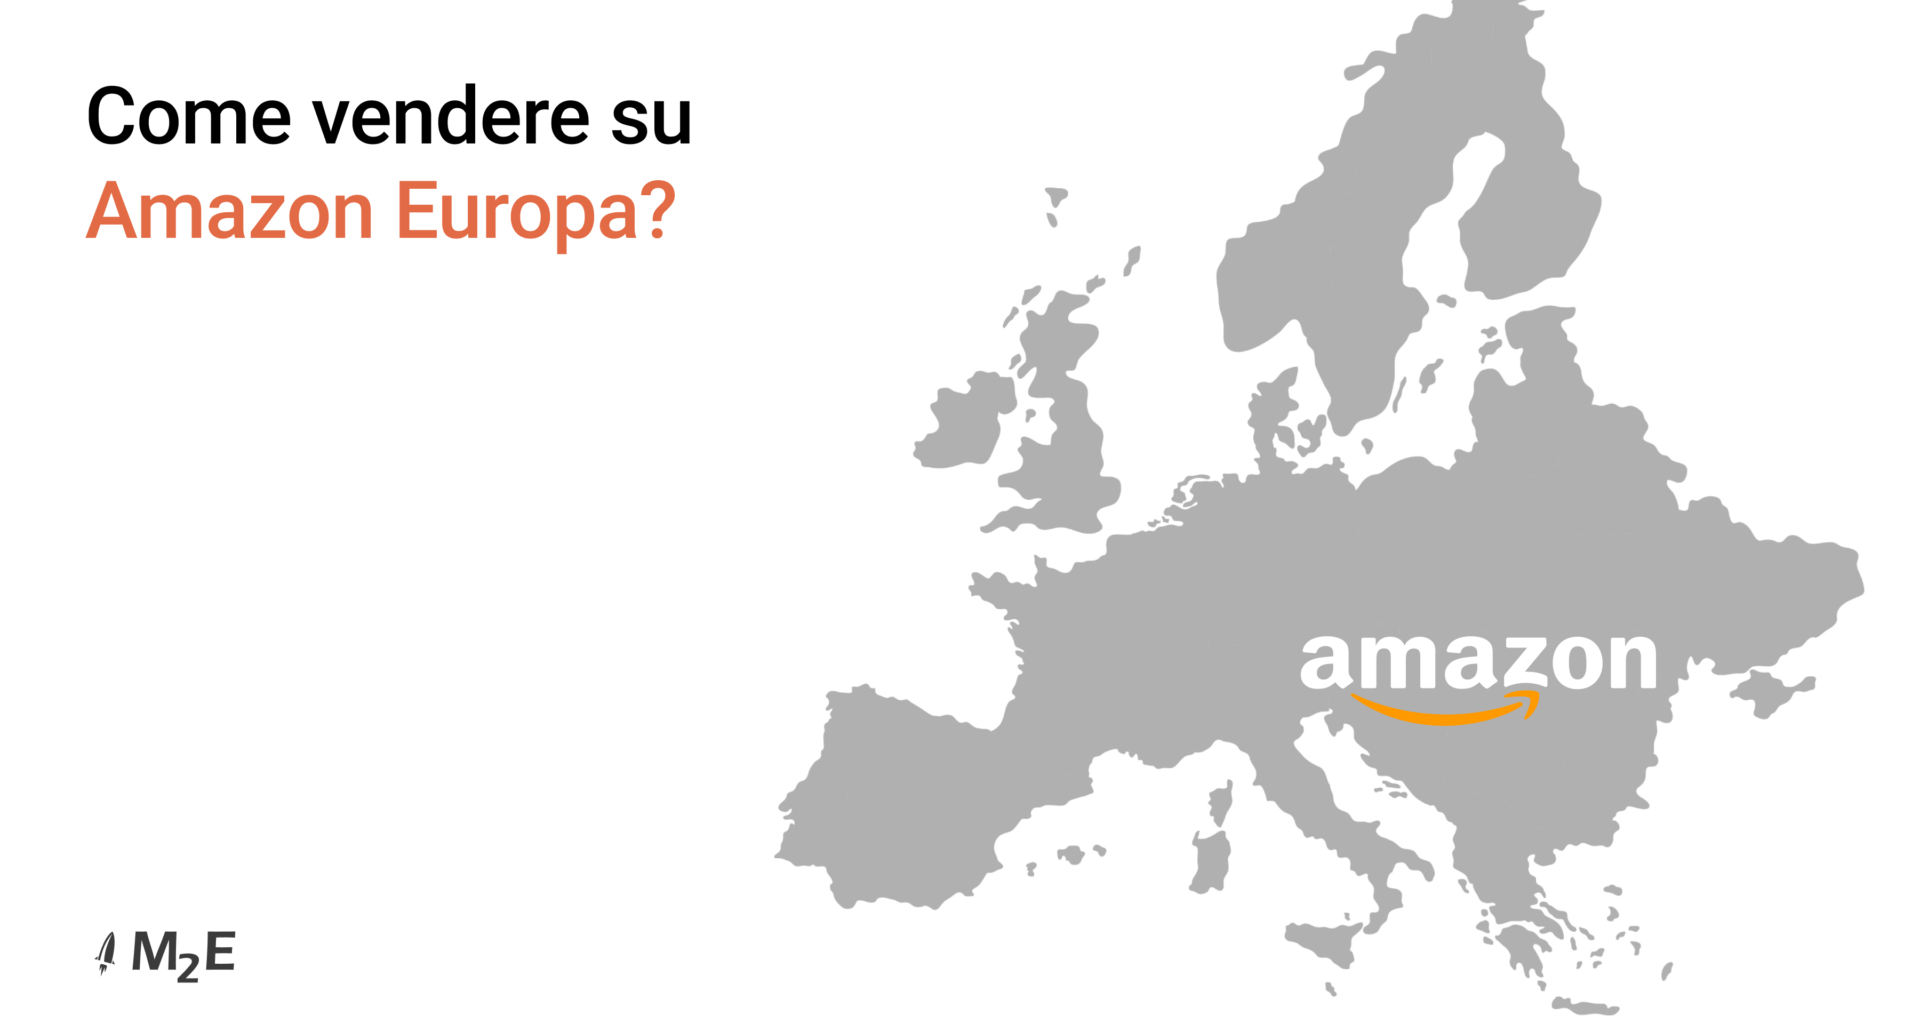 Come vendere su Amazon Europa?